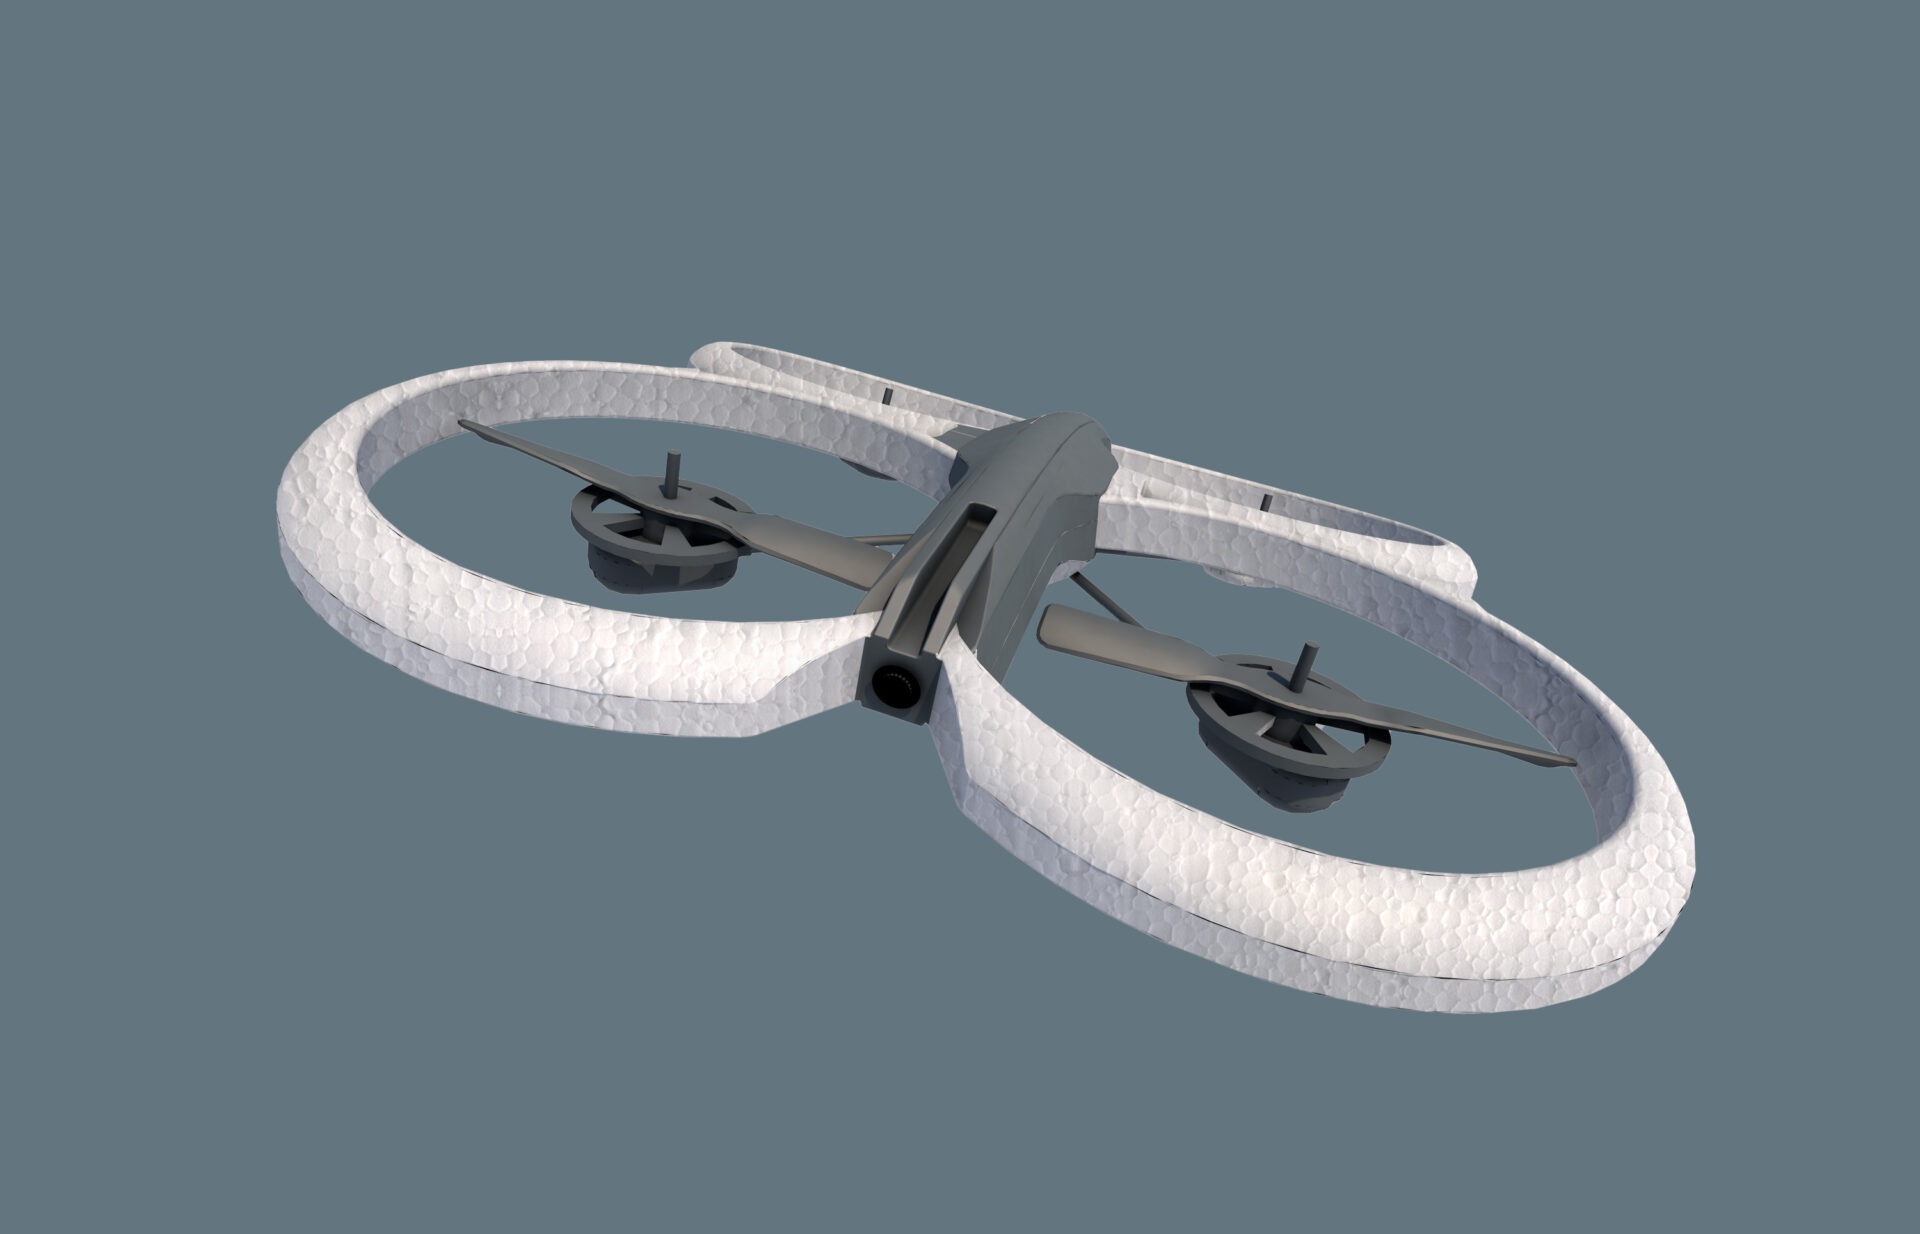 Prototipazione drone 3 real 2